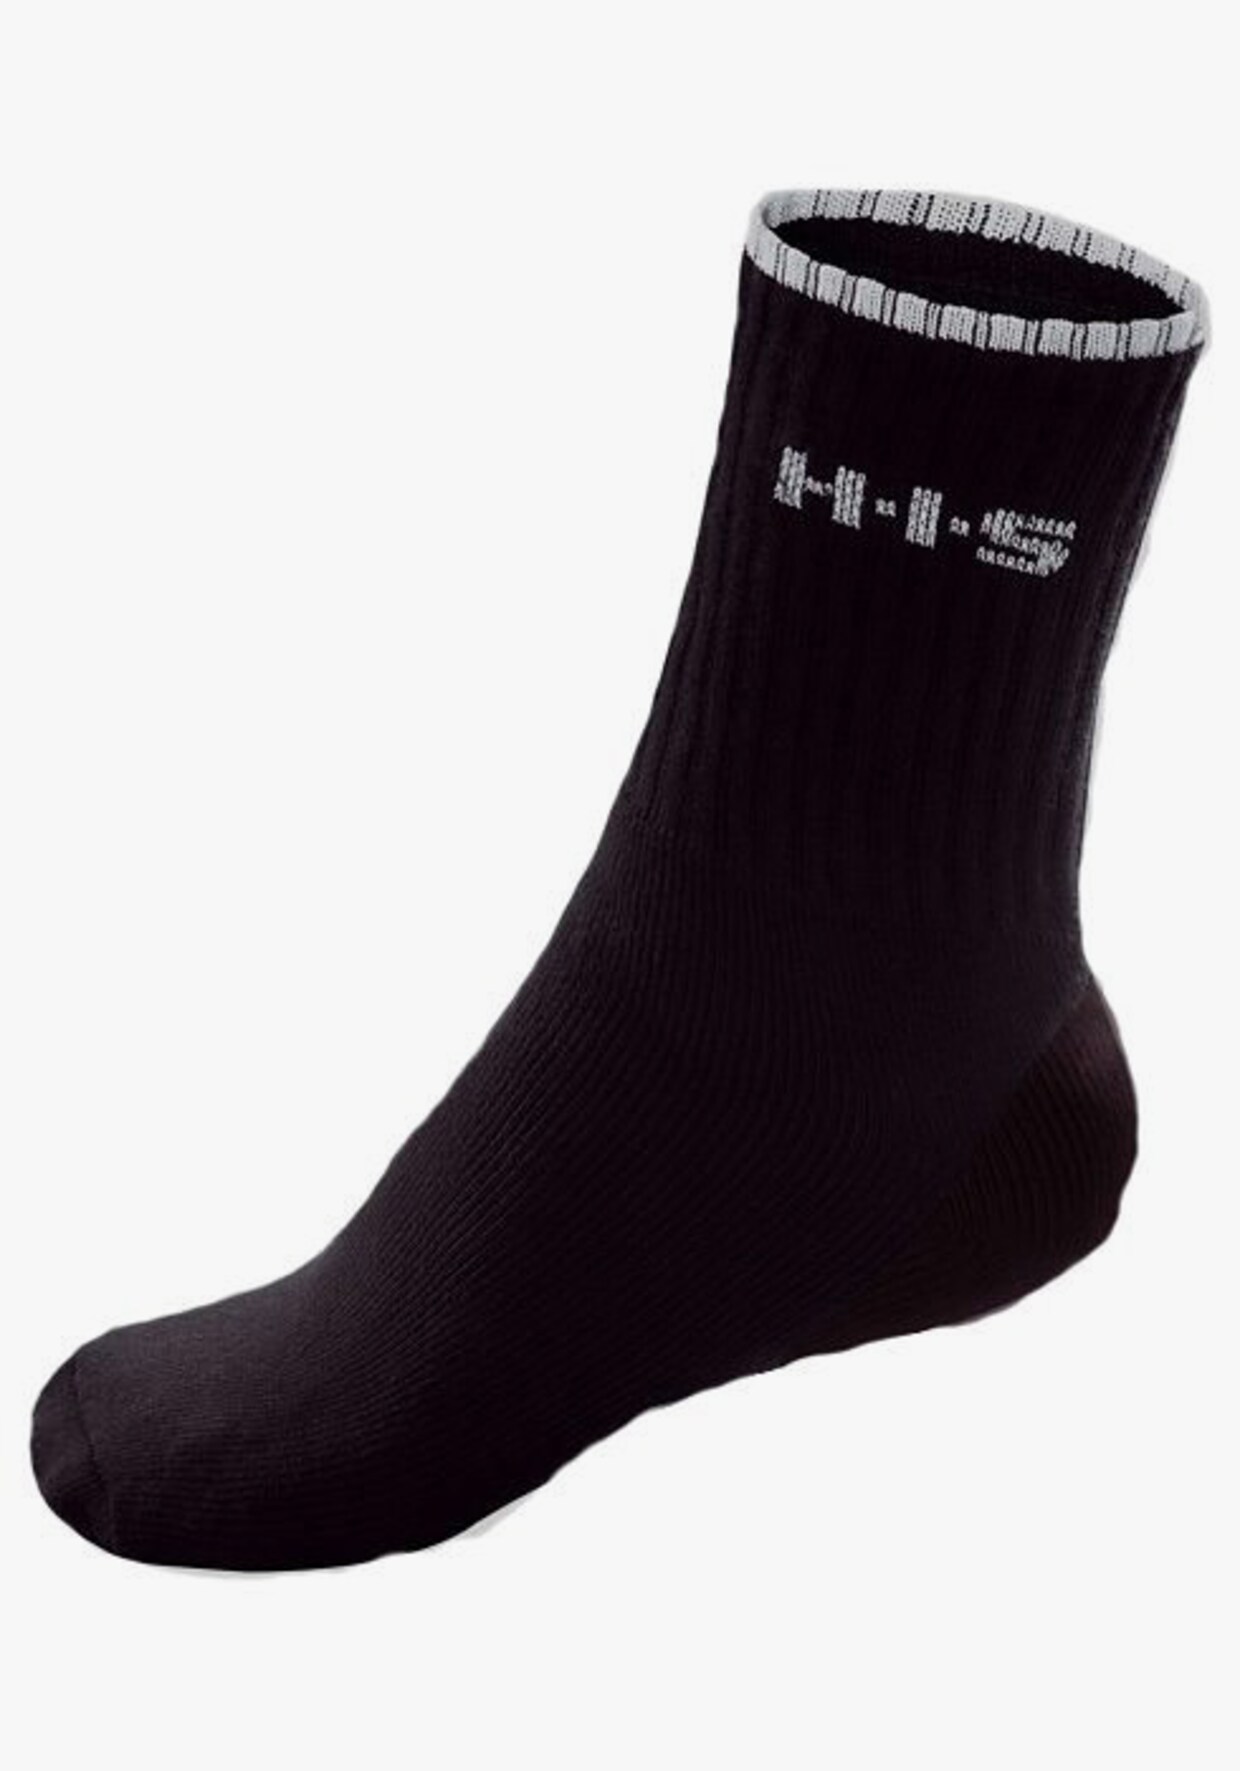 H.I.S Chaussettes de sport - noir